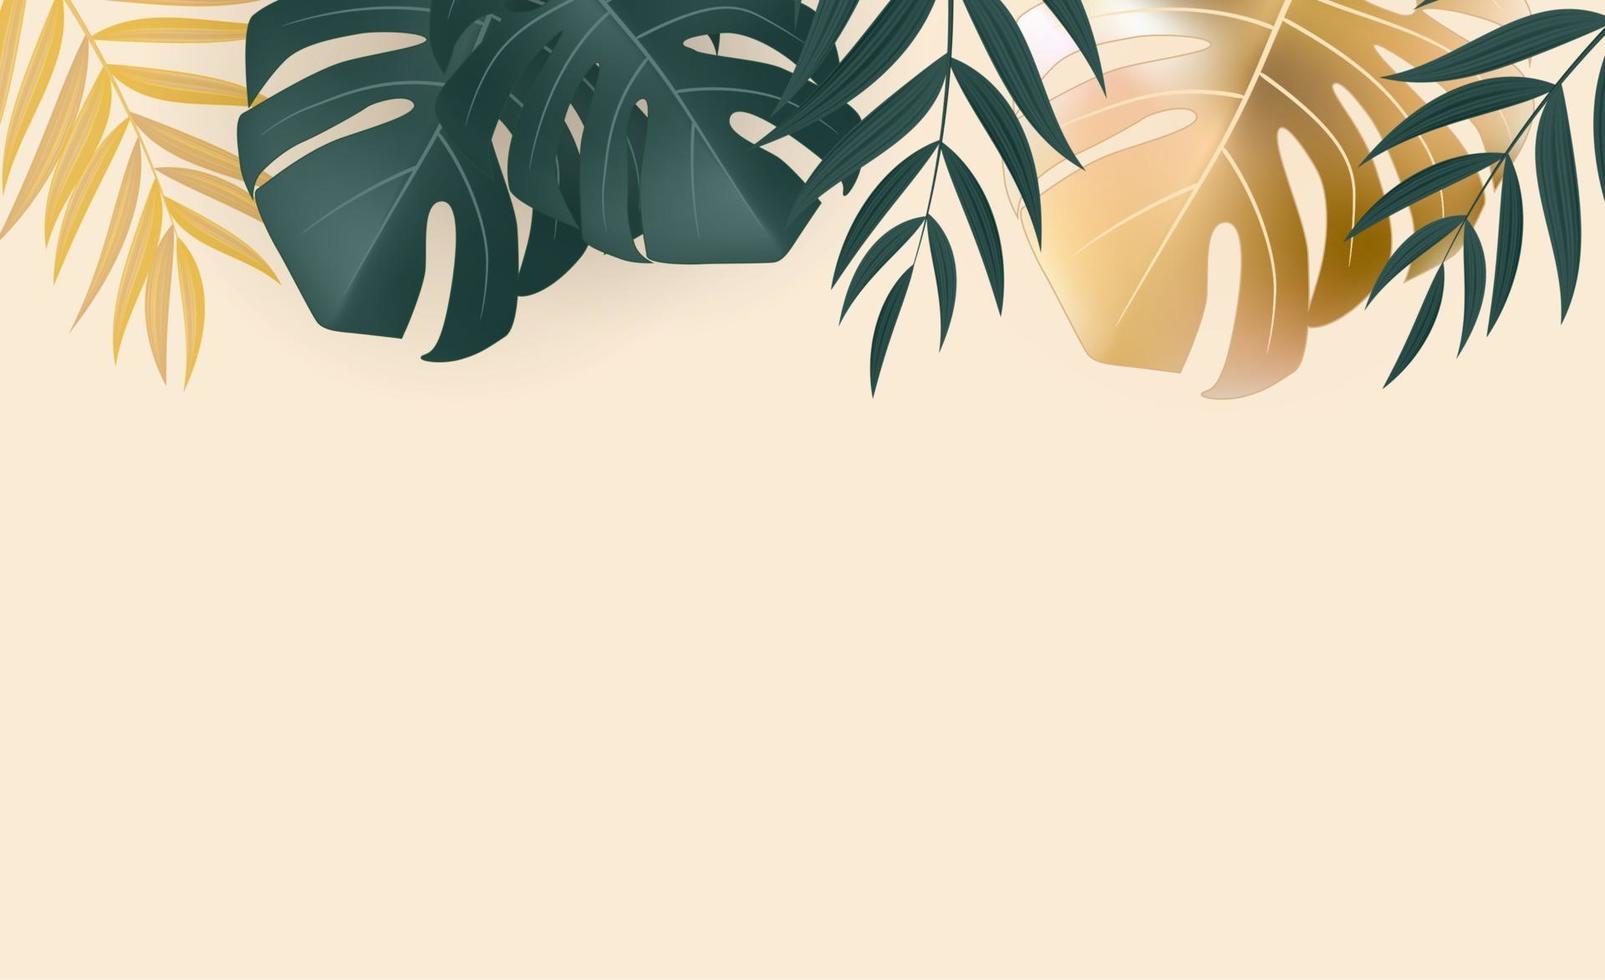 fond tropical de feuille de palmier vert et or réaliste naturel. illustration vectorielle eps10 vecteur